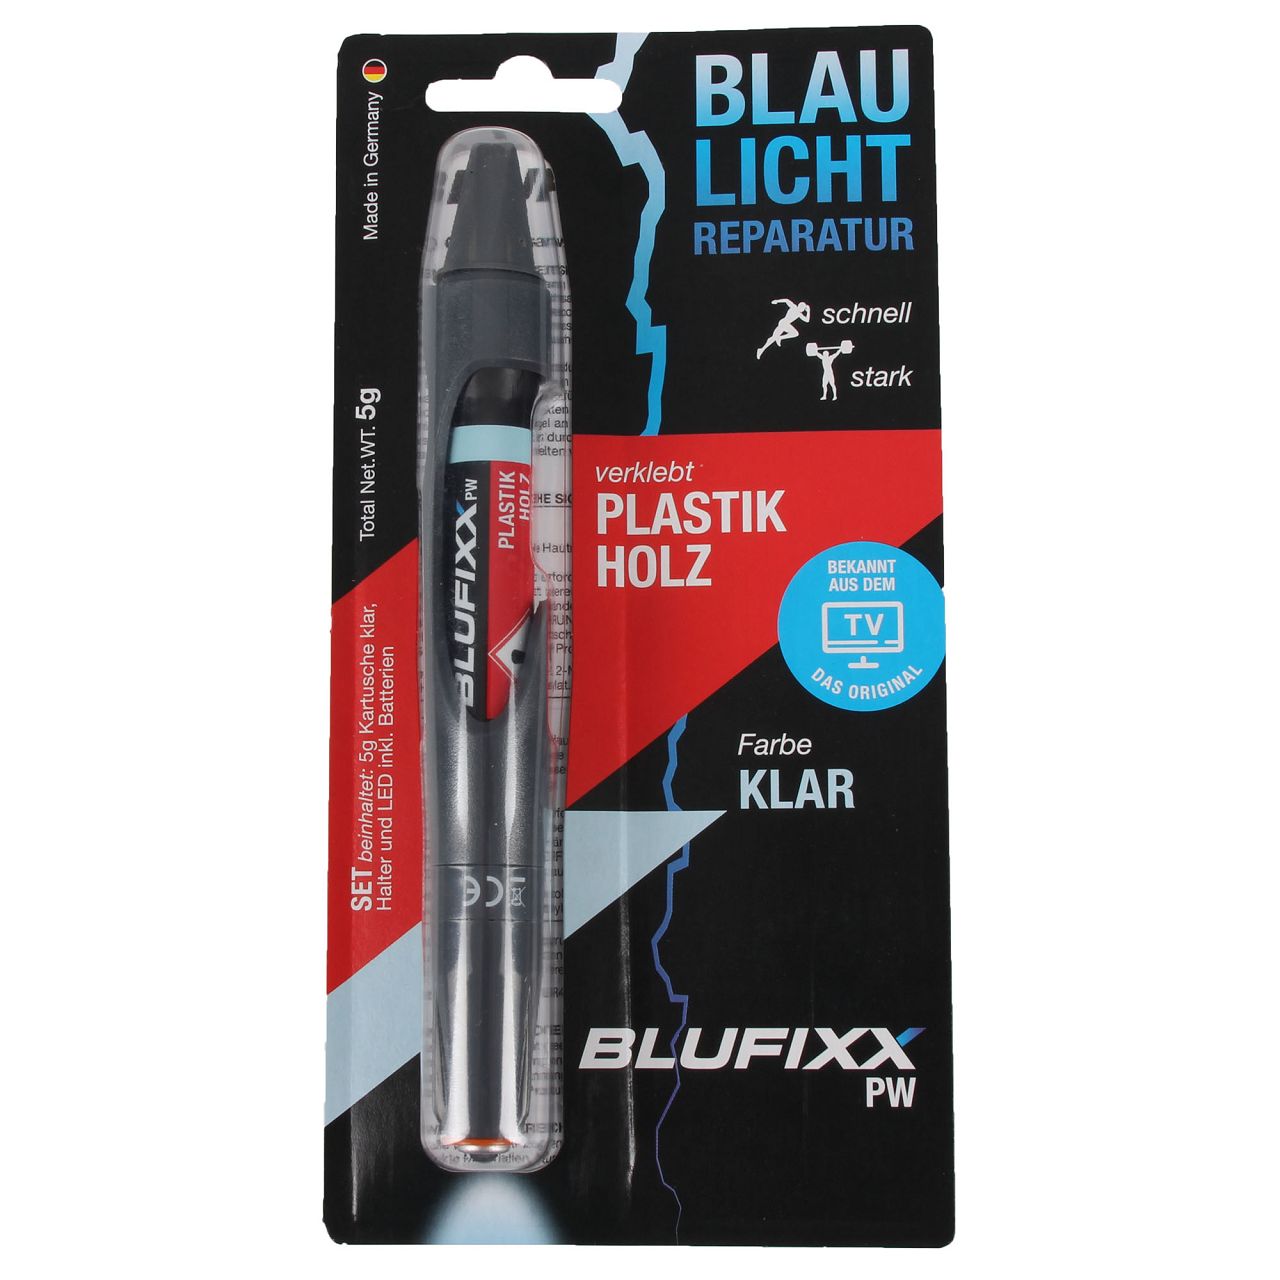 BLUFIXX PW Reparaturstift Spezialklebstoff Set KLAR für Kunststoffe und Holz